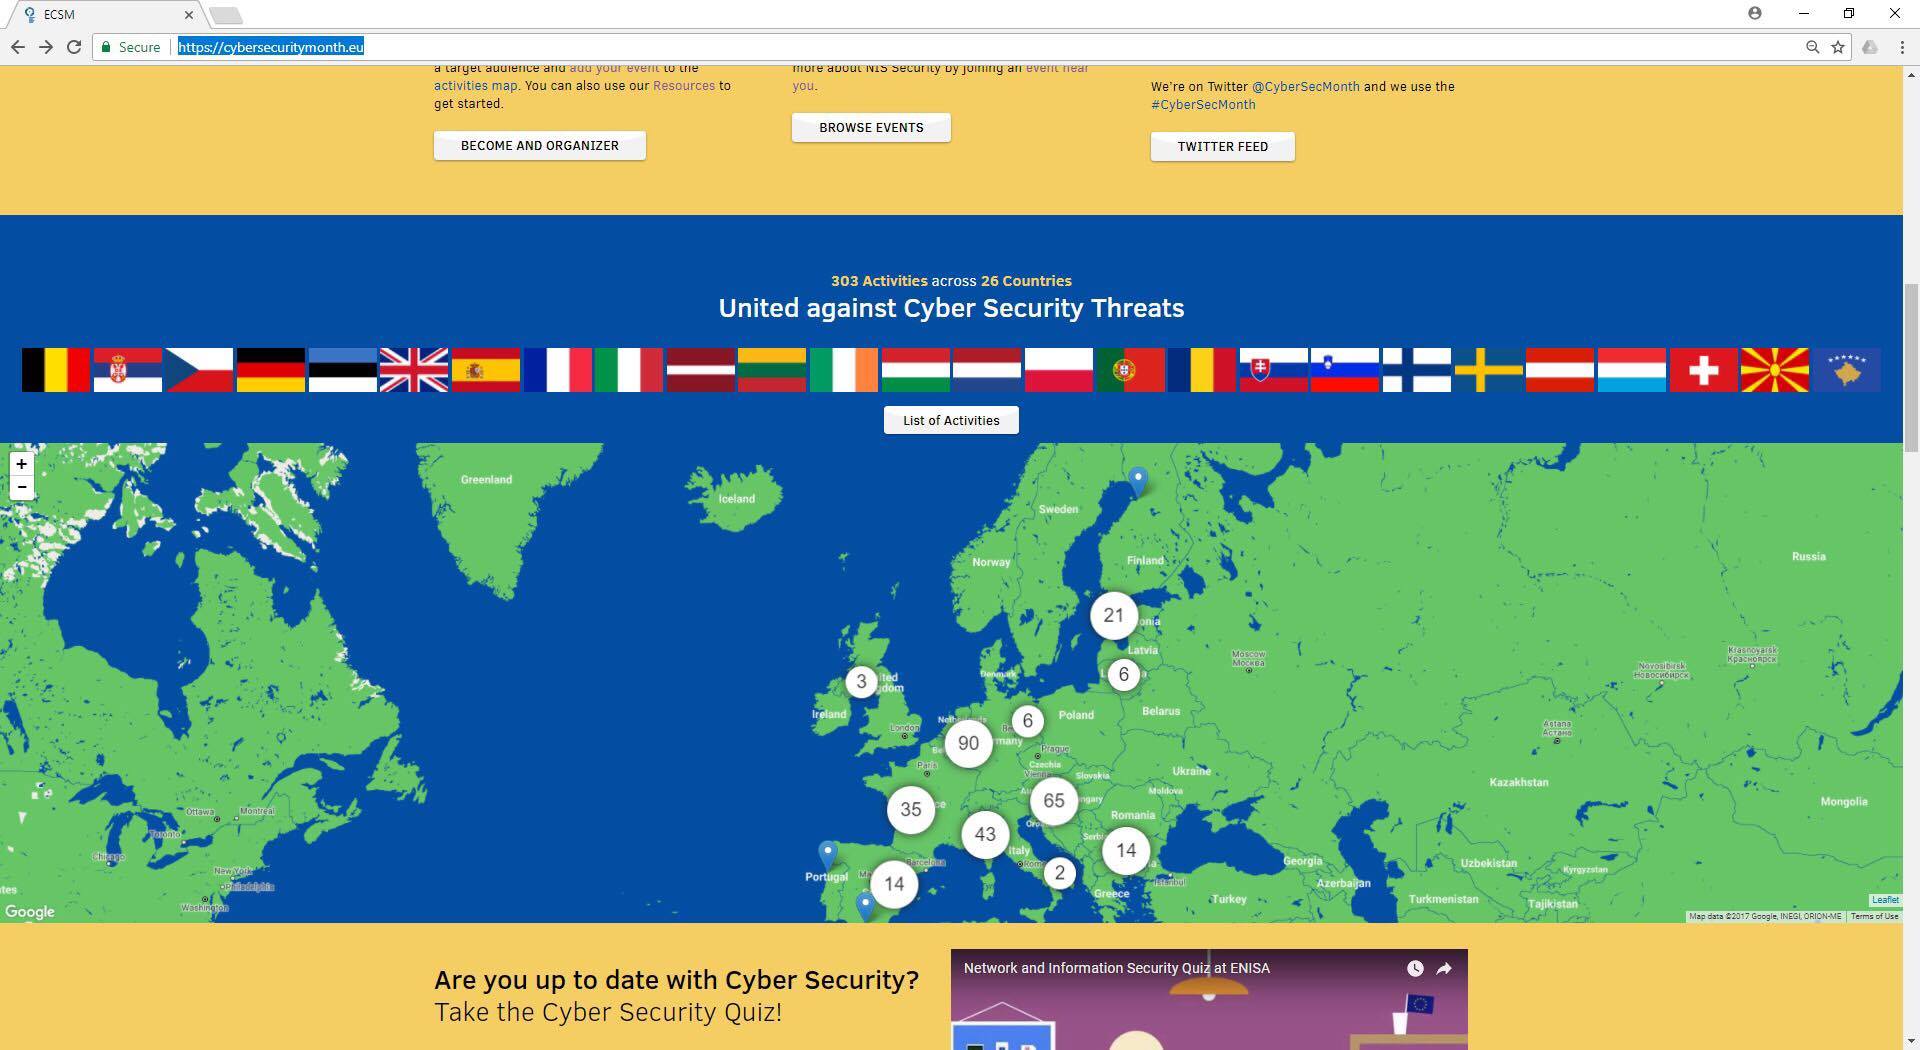 Aktiviteti “Hack Day Kosova 2017”, përfshihet në aktivitetet e BE-së për siguri kibernetike